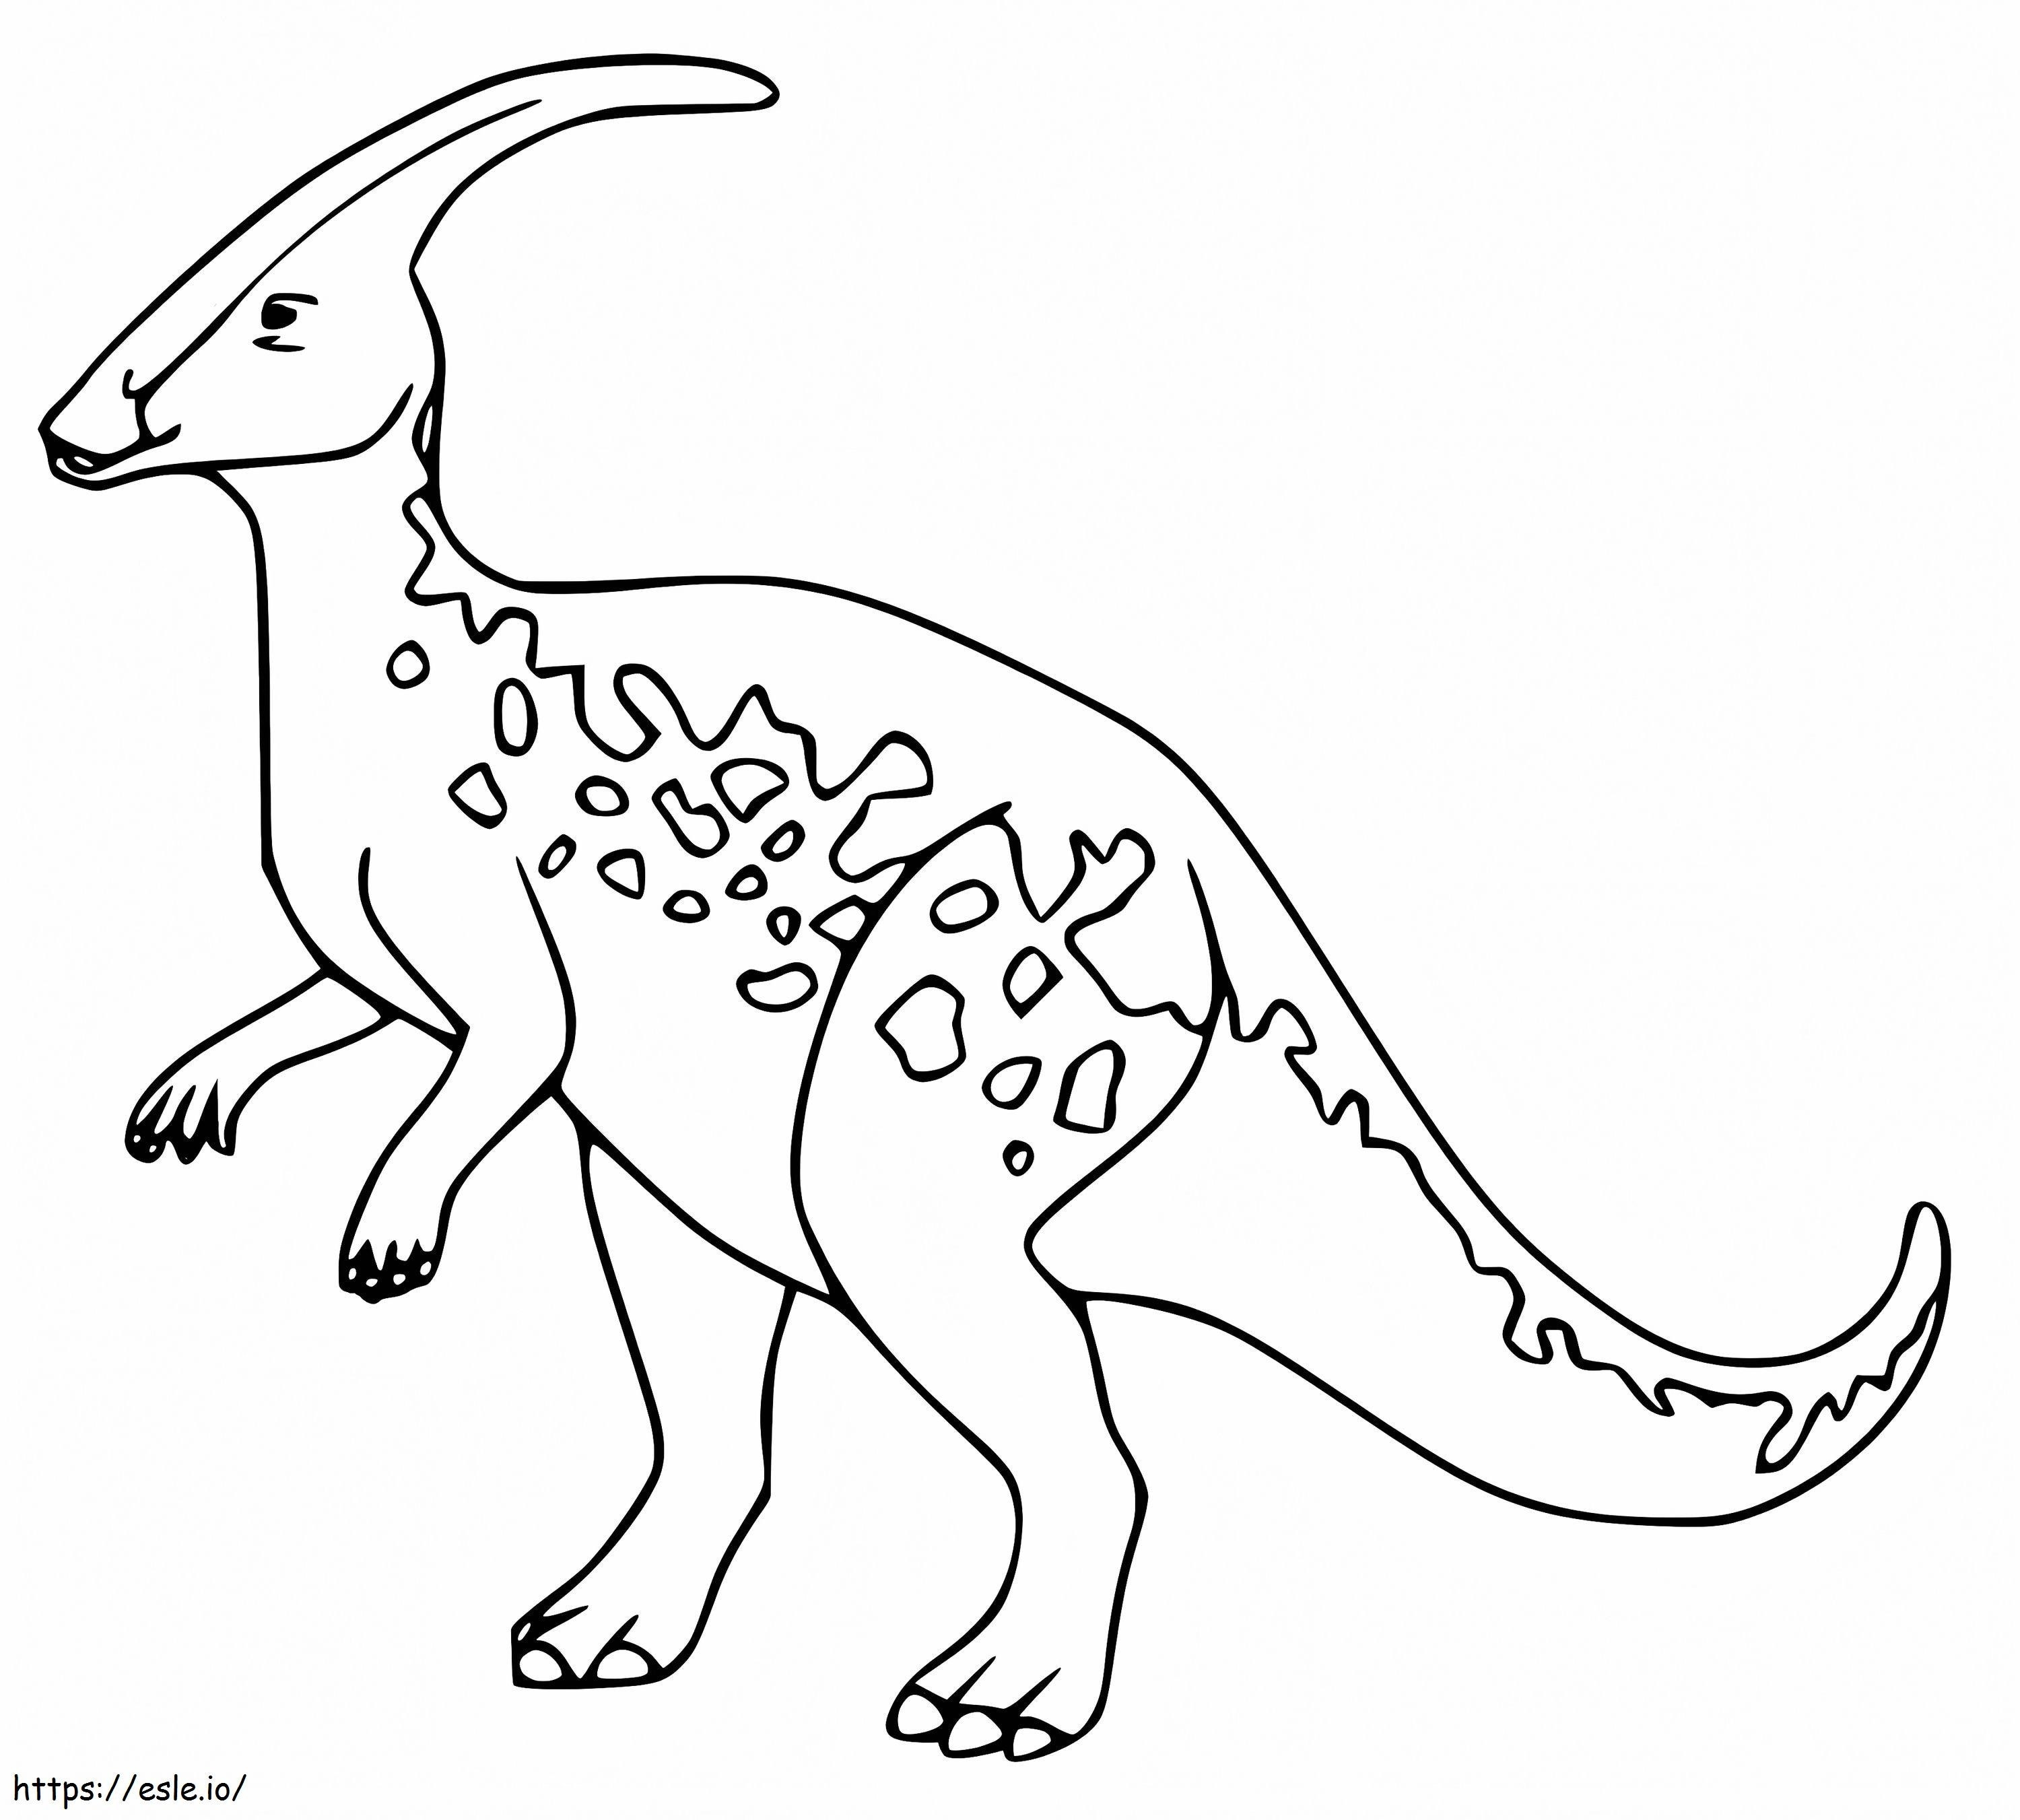 Coloriage Parasaurolophus 4 à imprimer dessin